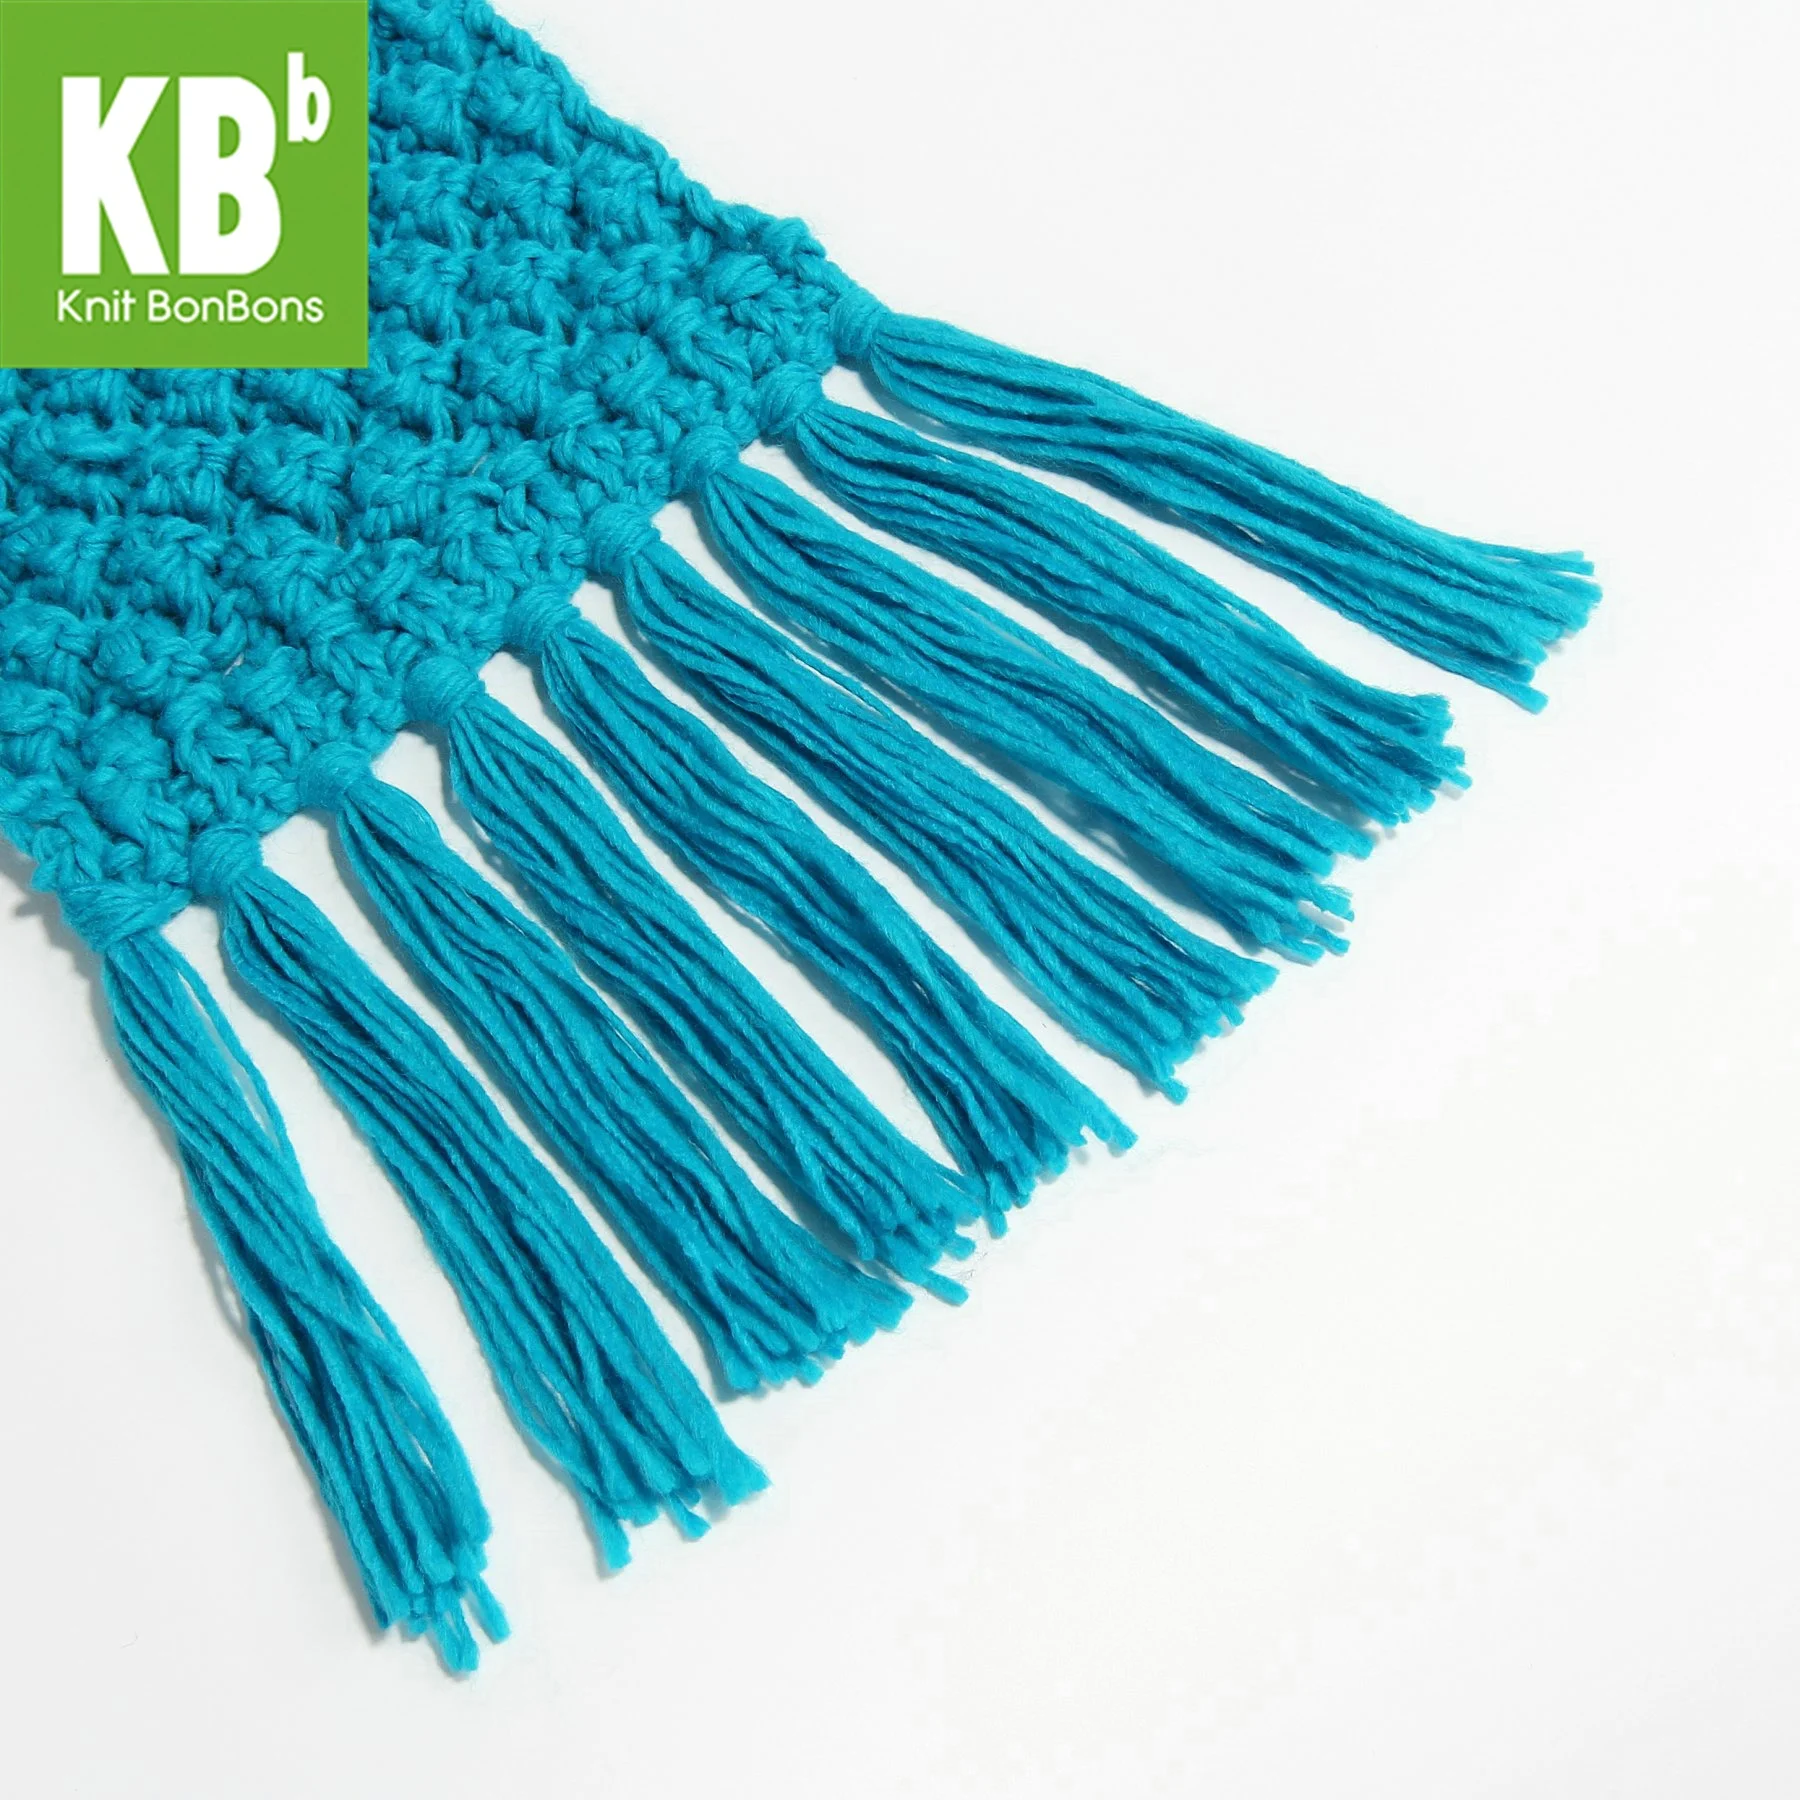 KBB весенний популярный стильный объемный кружевной шерстяной шарф из овечьей шерсти, вязаный теплый шарф для шеи, шарфы для женщин и мужчин